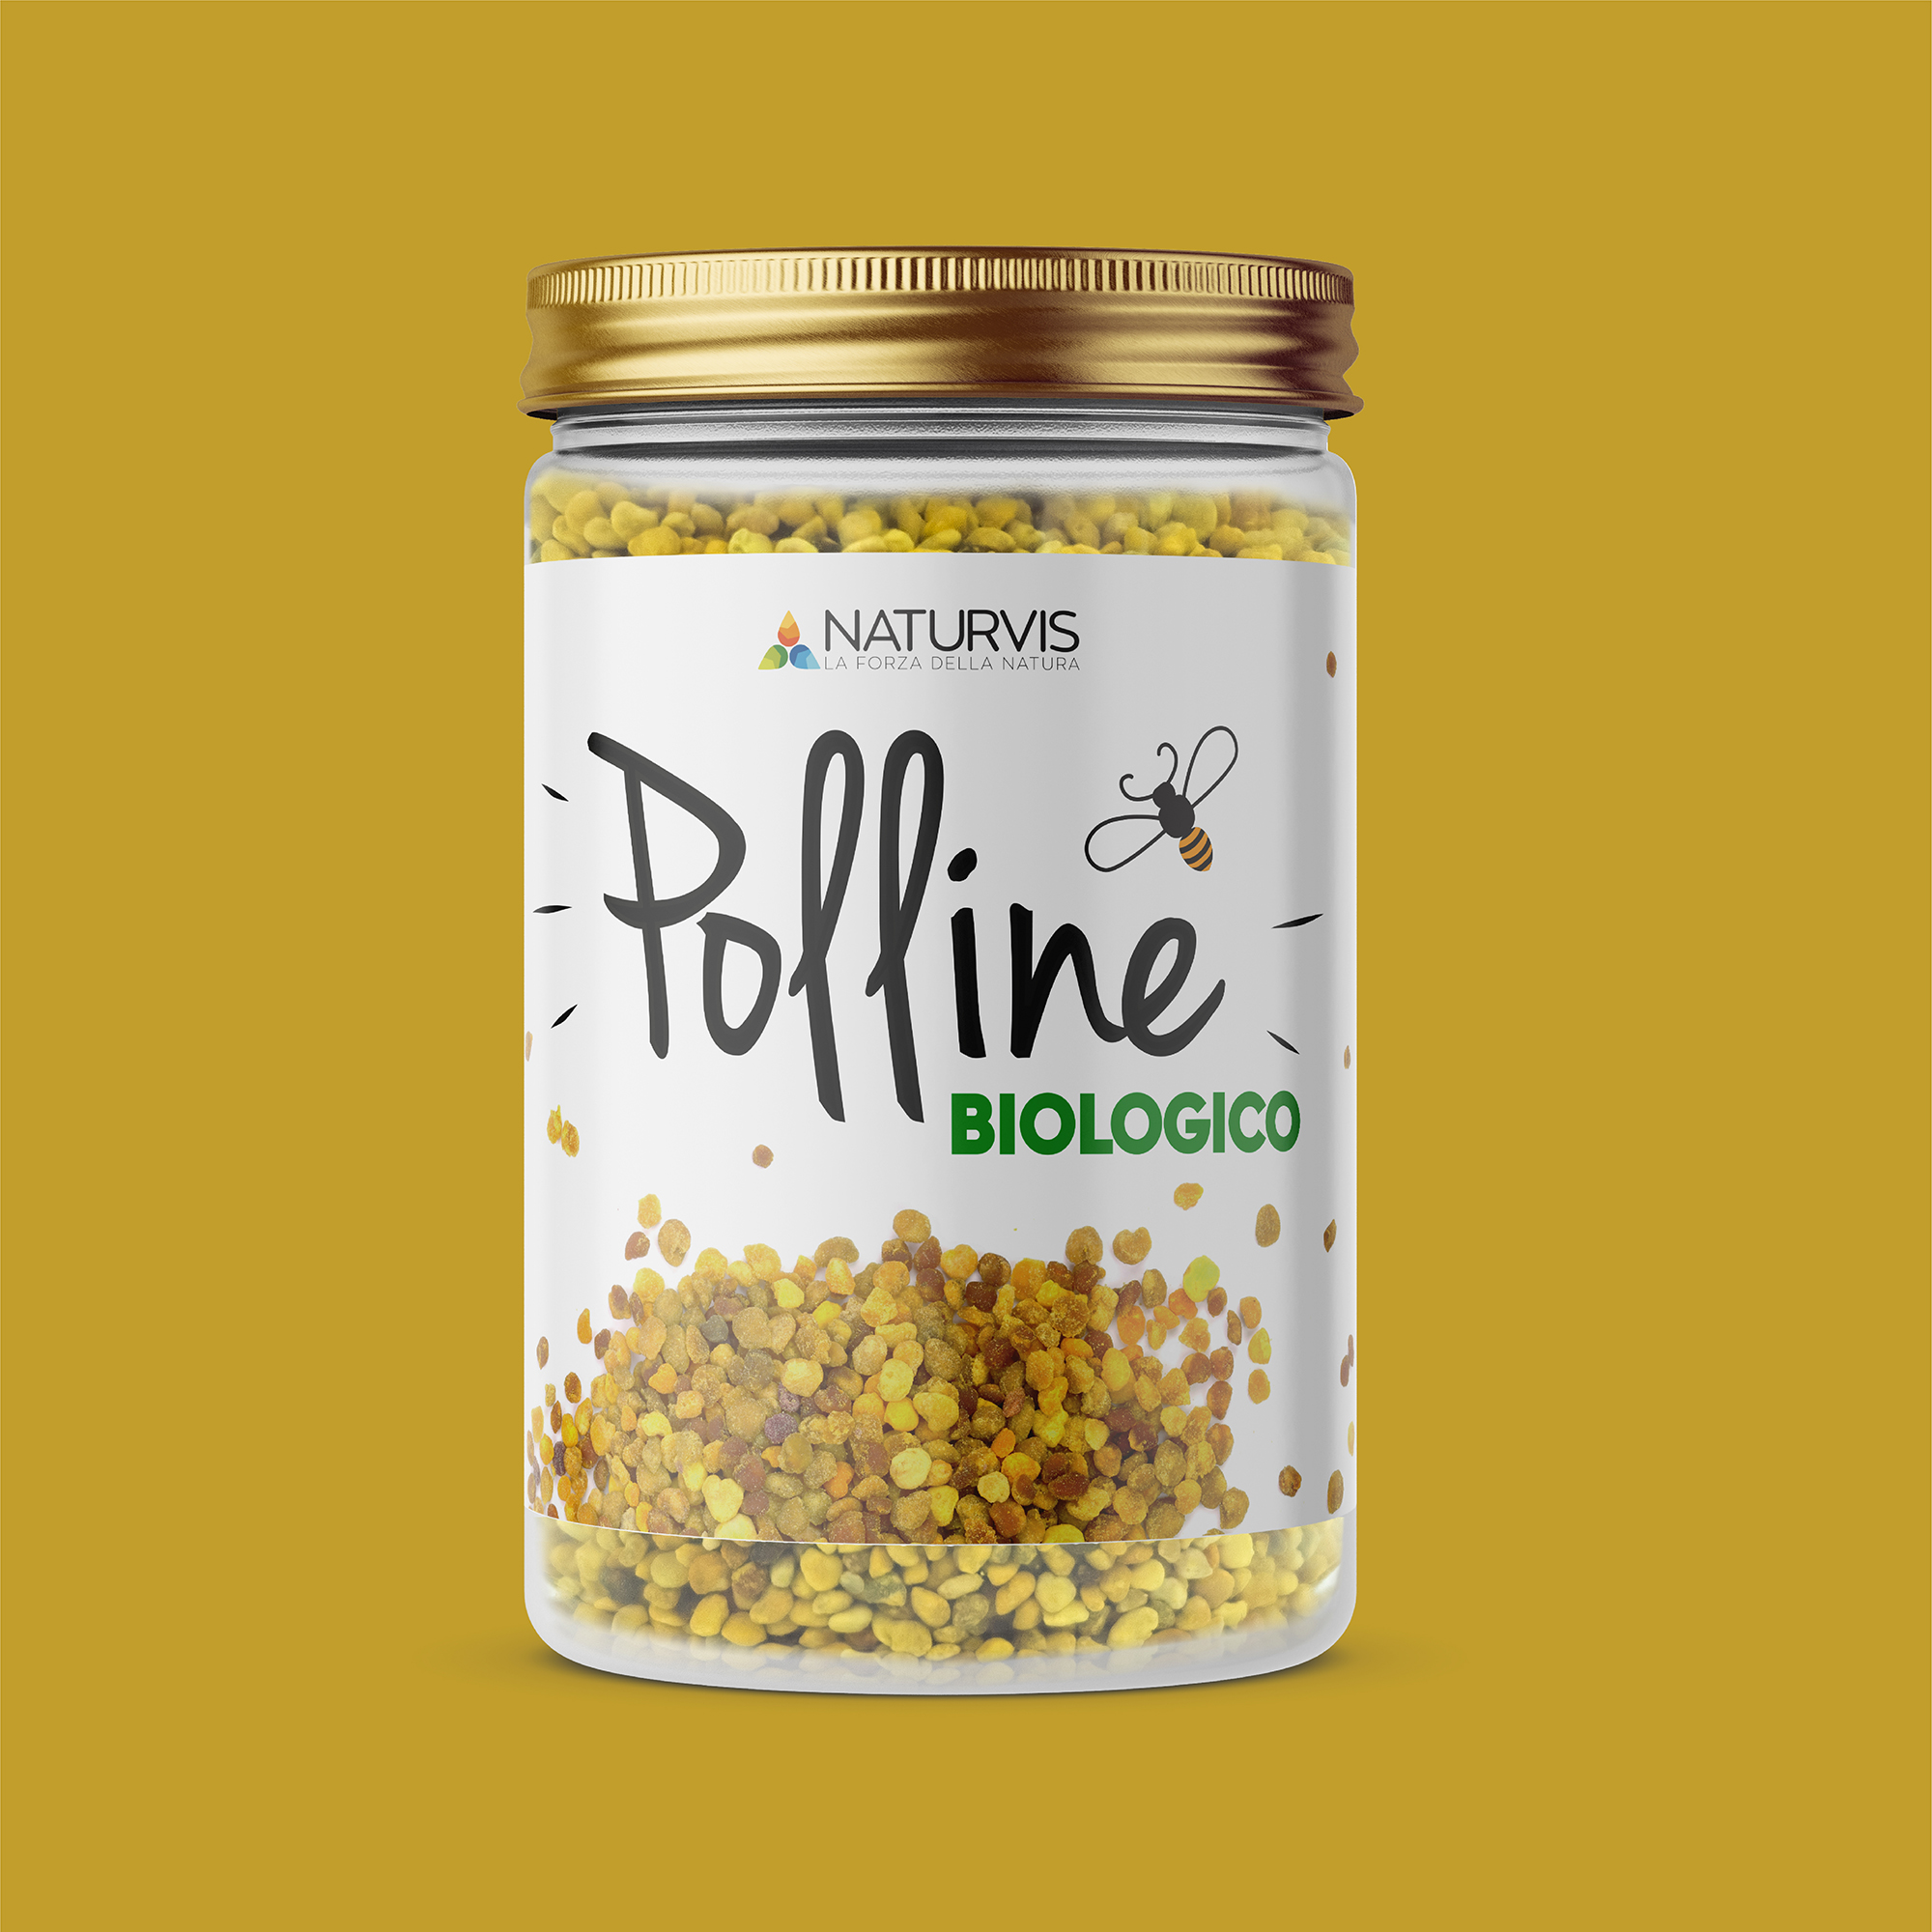 Polline Biologico Italiano